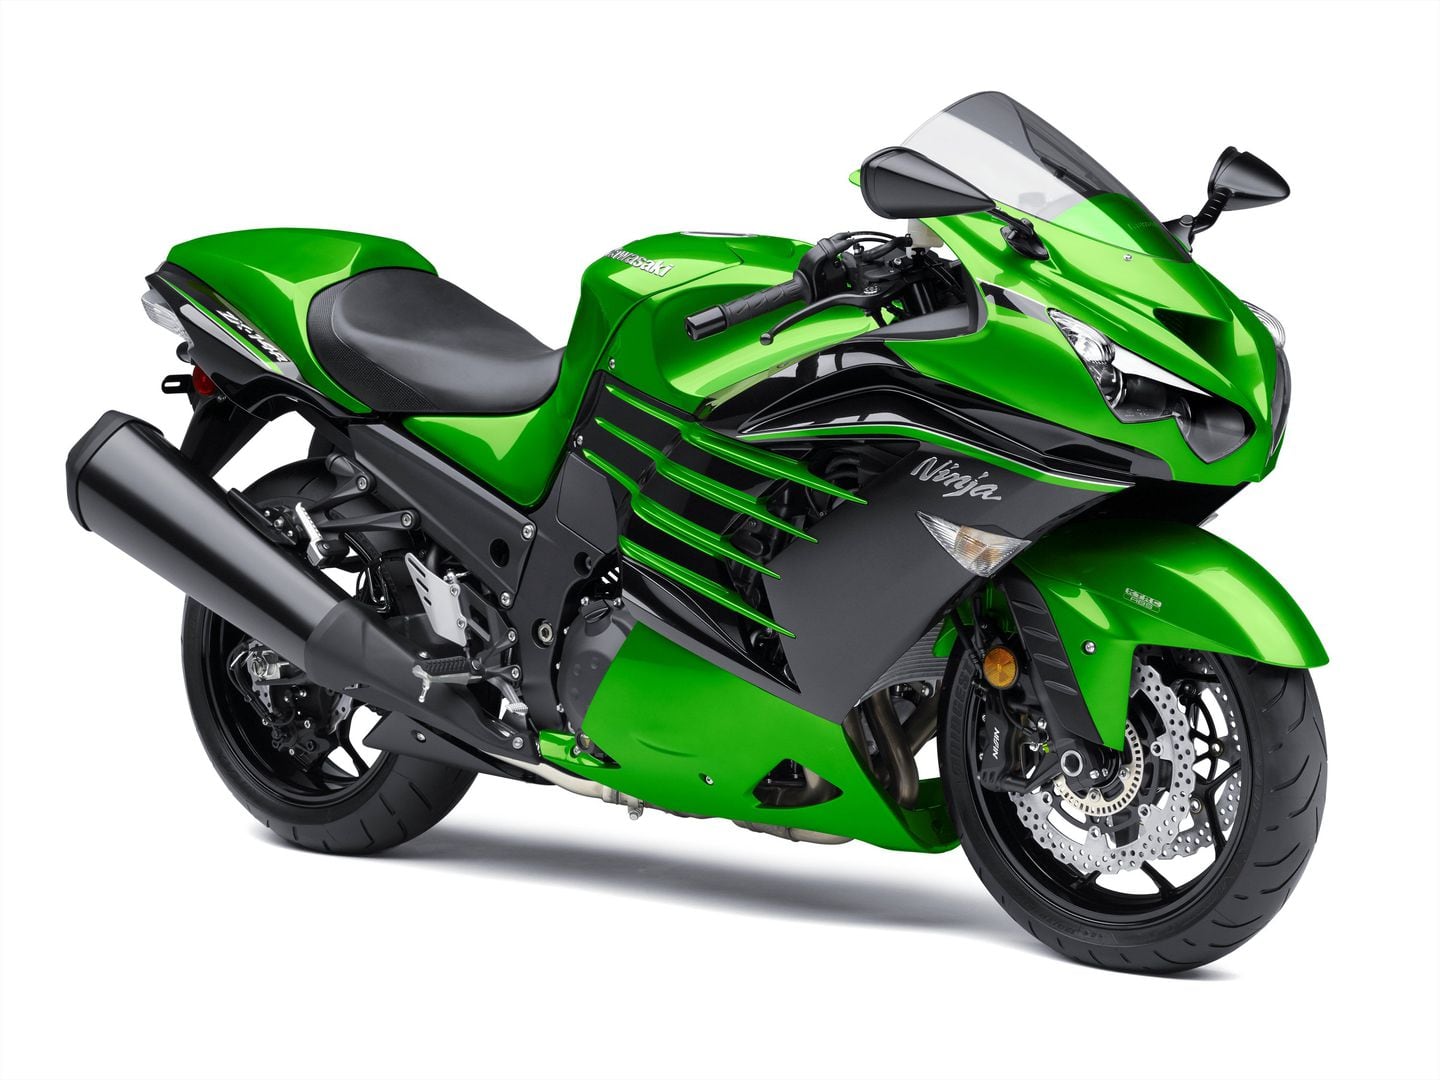 Kawasaki 2015 Models | Motorcyclist